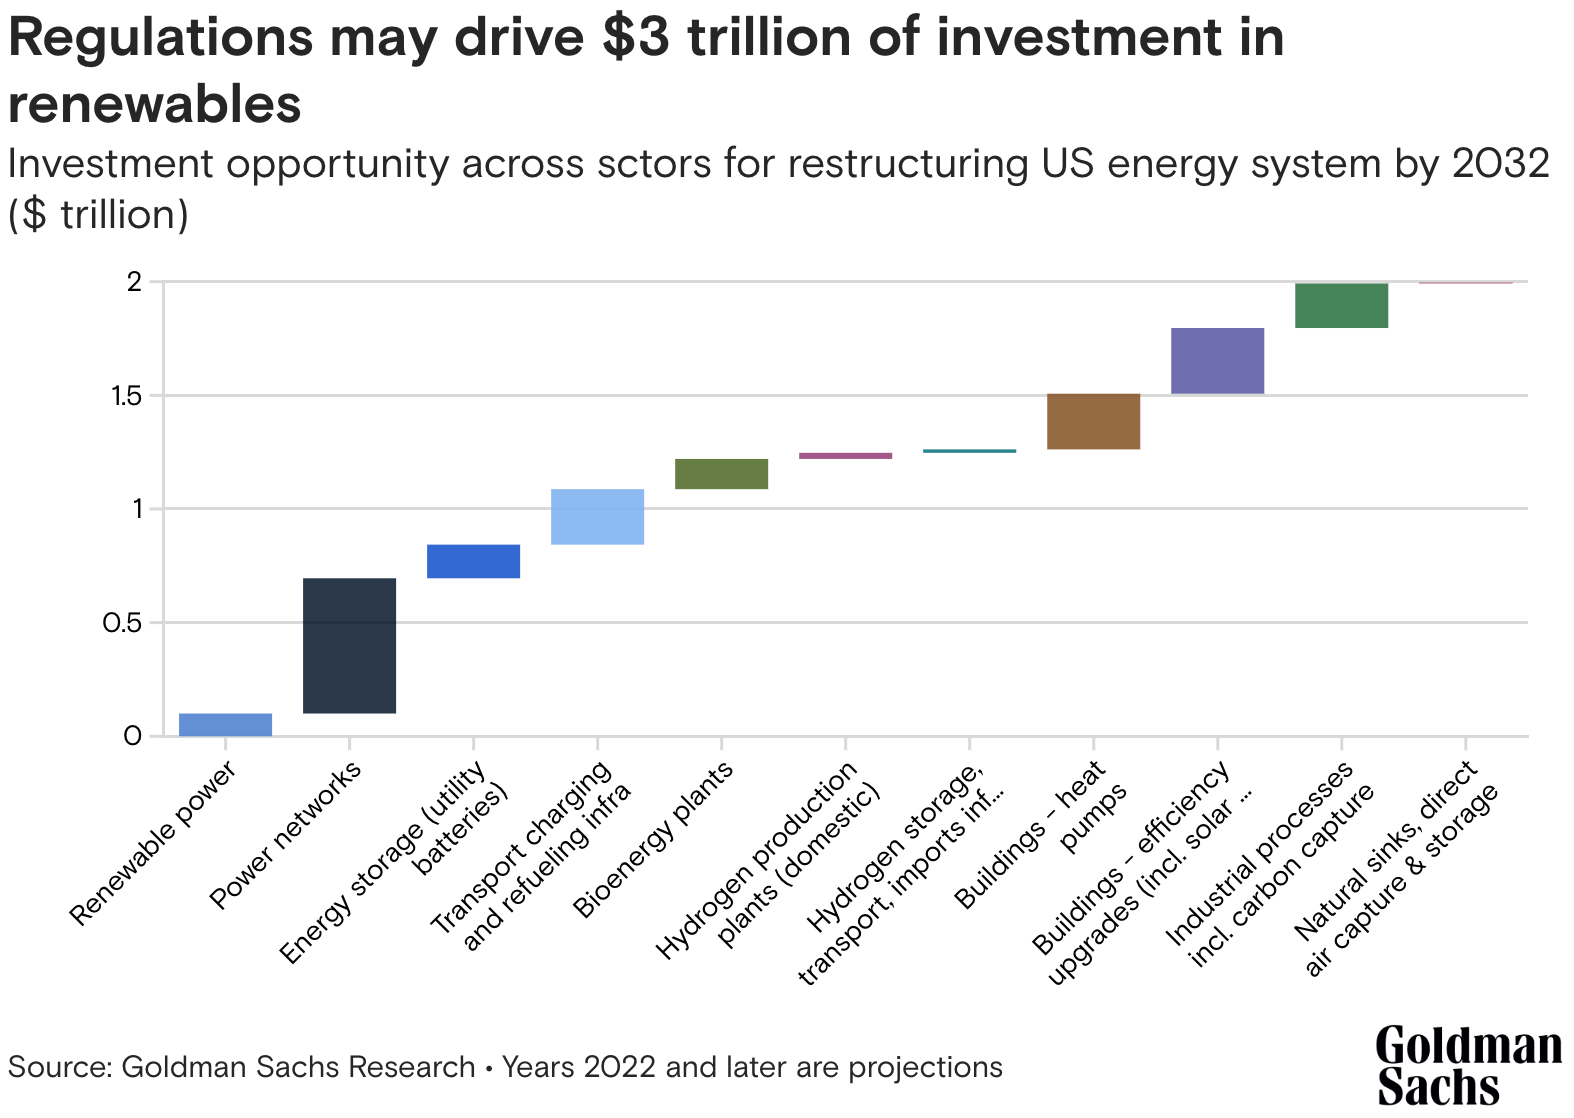 Báo cáo của Goldman Sachs cho thấy các luật mới sẽ thúc đẩy khoản đầu tư 3 nghìn tỷ đô la vào năng lượng tái tạo